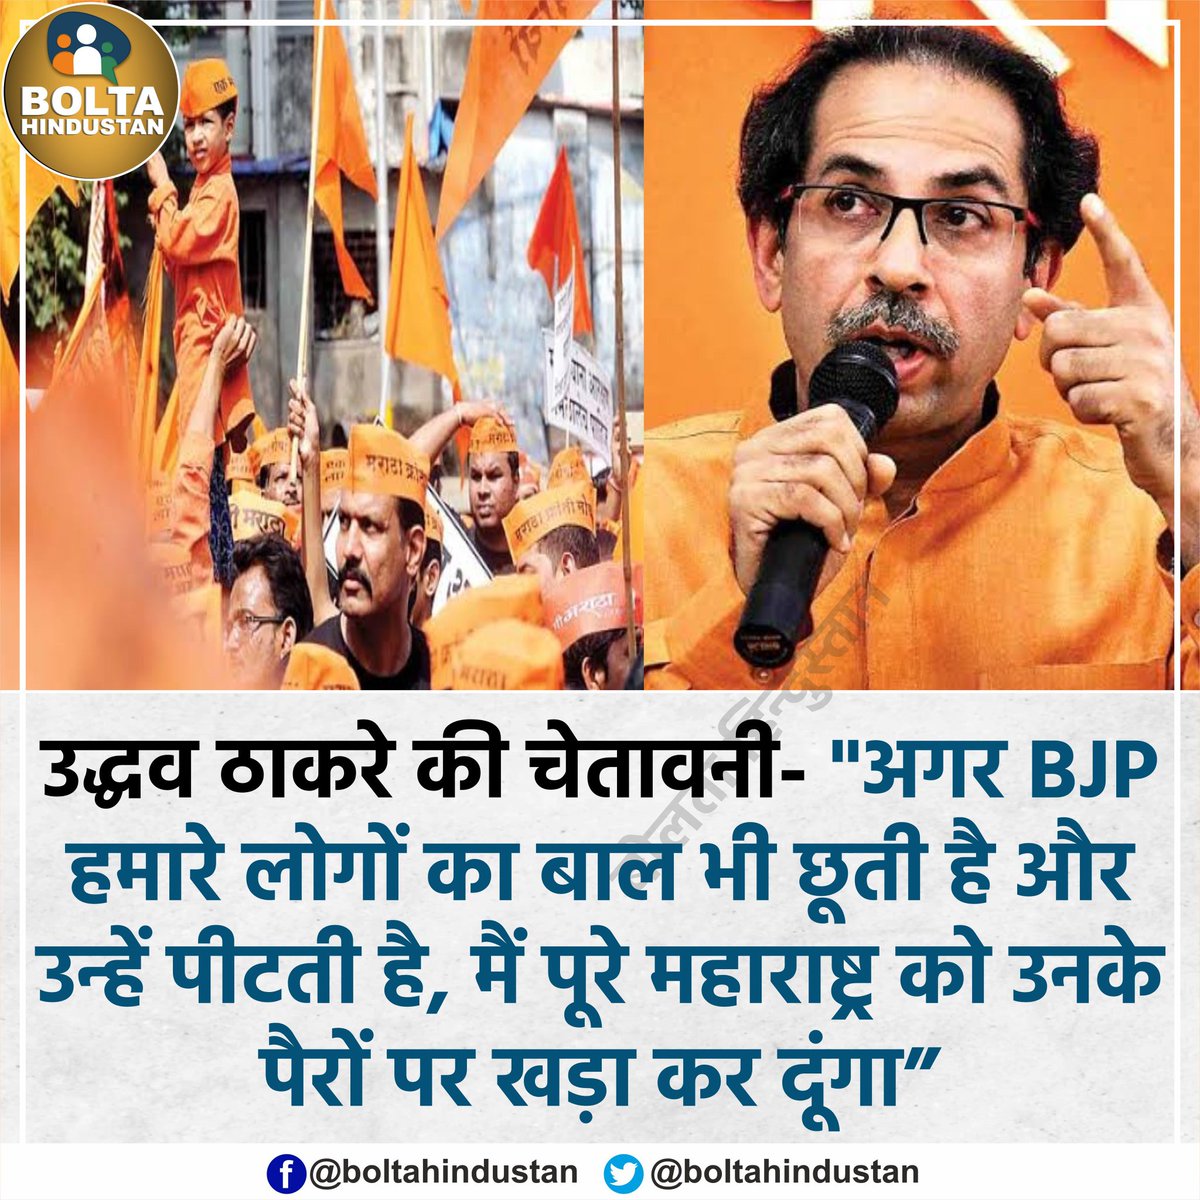 उद्धव ठाकरे की चेतावनी- 'अगर BJP ने हमारे लोगों का बाल भी बांका किया तो मैं पूरे महाराष्ट्र को खड़ा कर दूंगा'